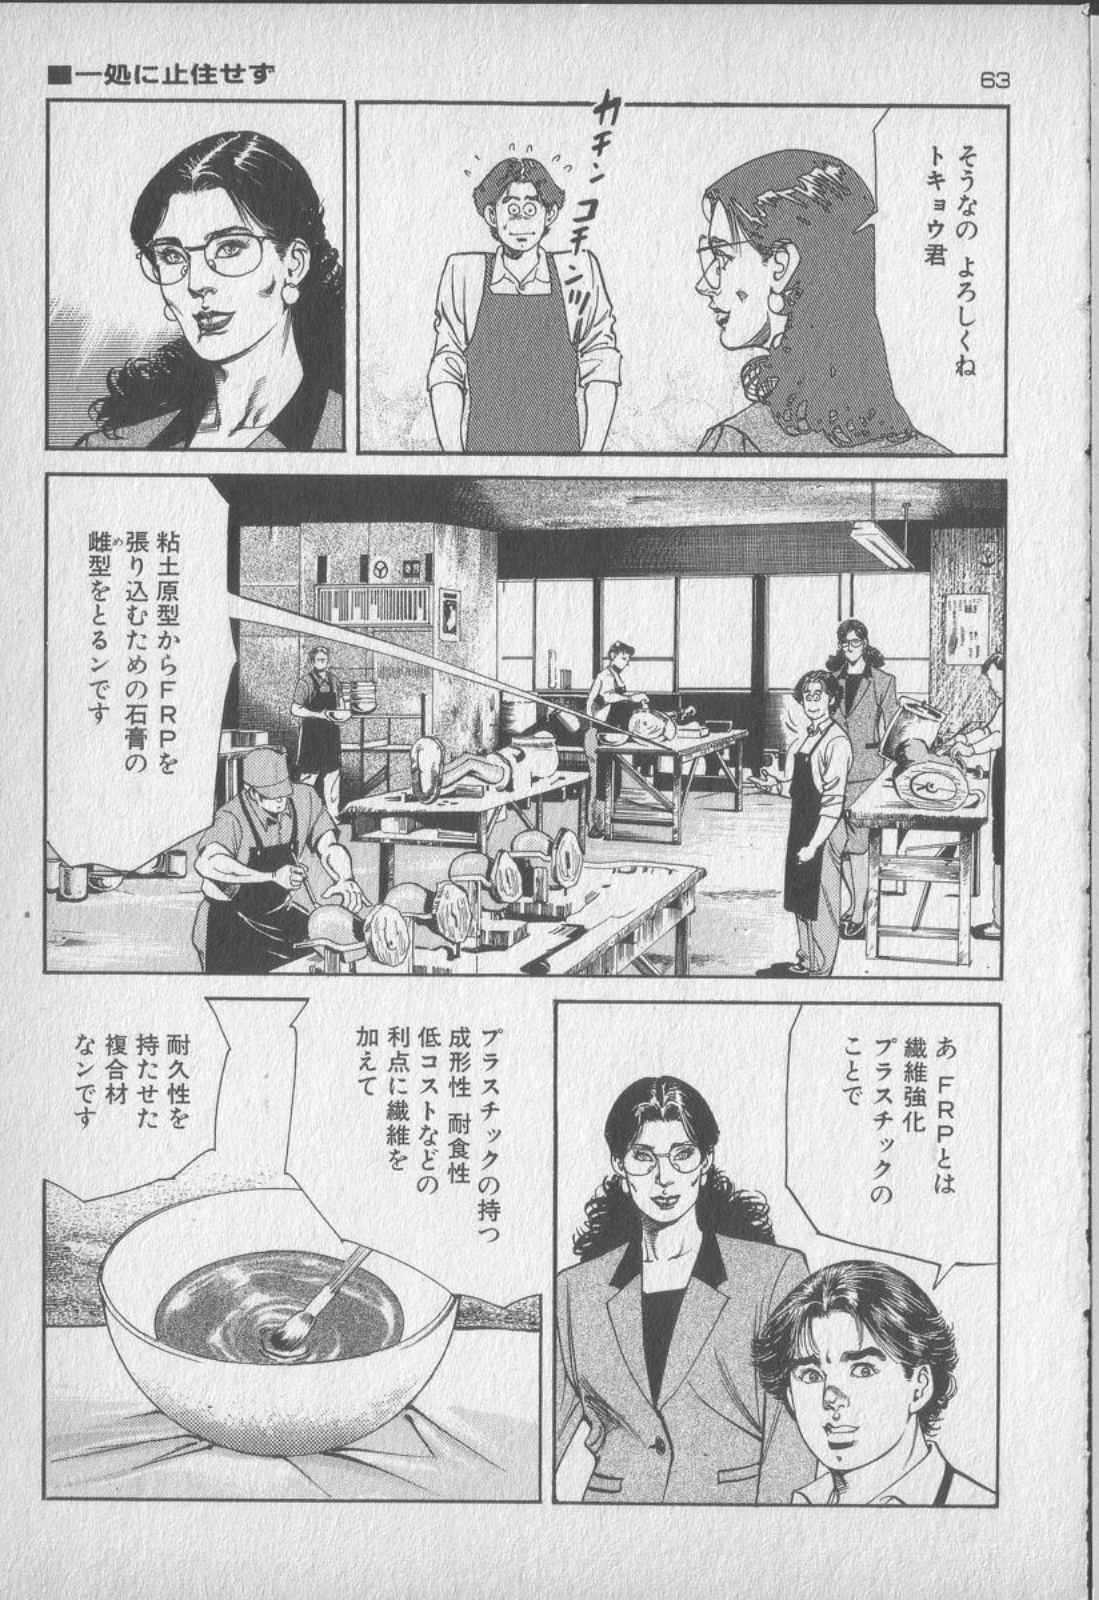 [Kano Seisaku, Koike Kazuo] Jikken Ningyou Dummy Oscar Vol.18 [叶精作, 小池一夫] 実験人形ダミー・オスカー 第18巻